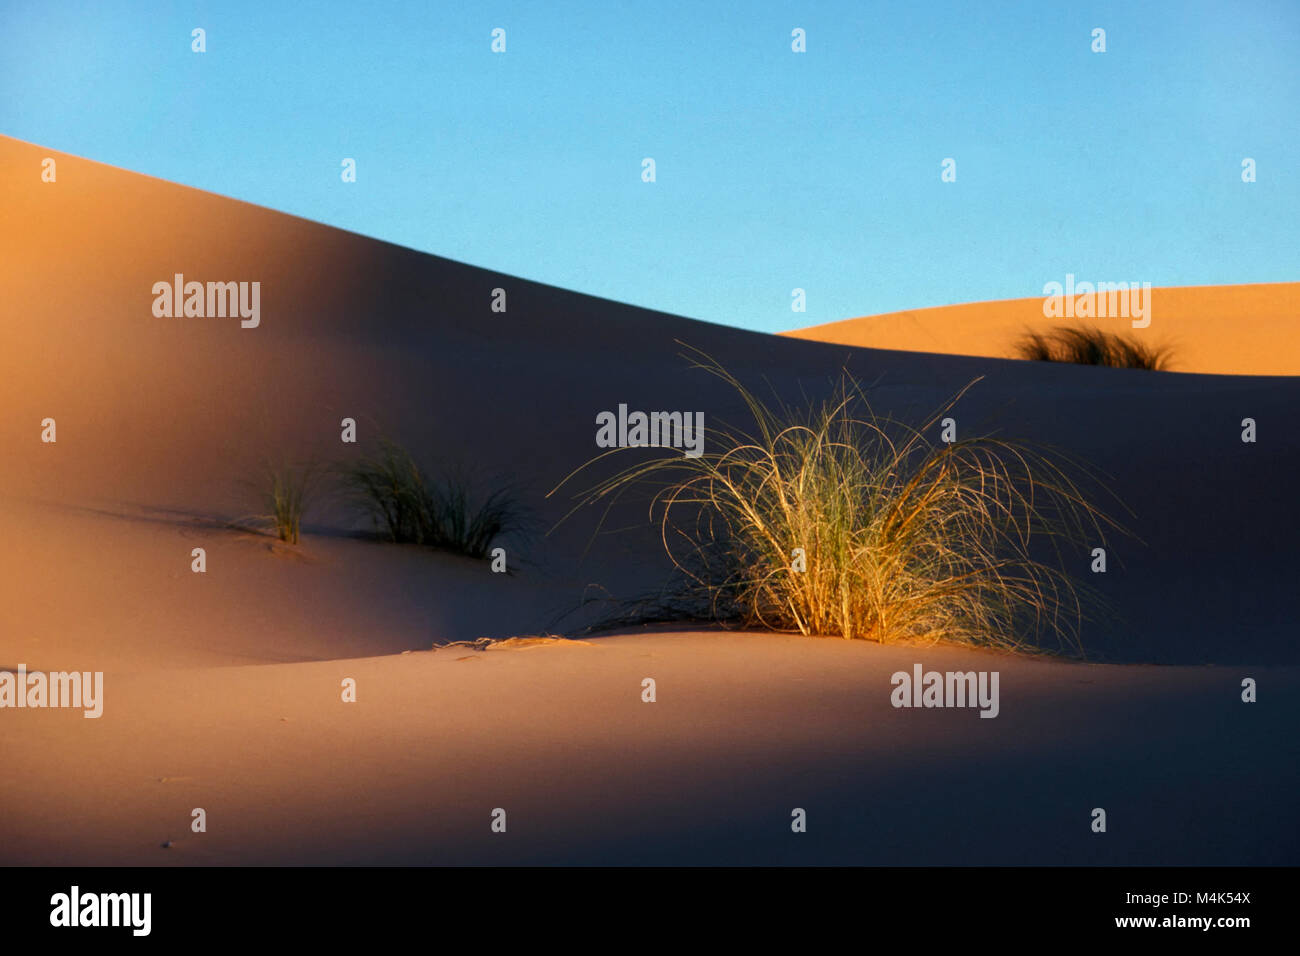 L'Algérie. Kerzaz. La mer de sable de l'Ouest. Grand Erg occidental. Désert du Sahara. Les dunes de sable. Les Buissons. Banque D'Images